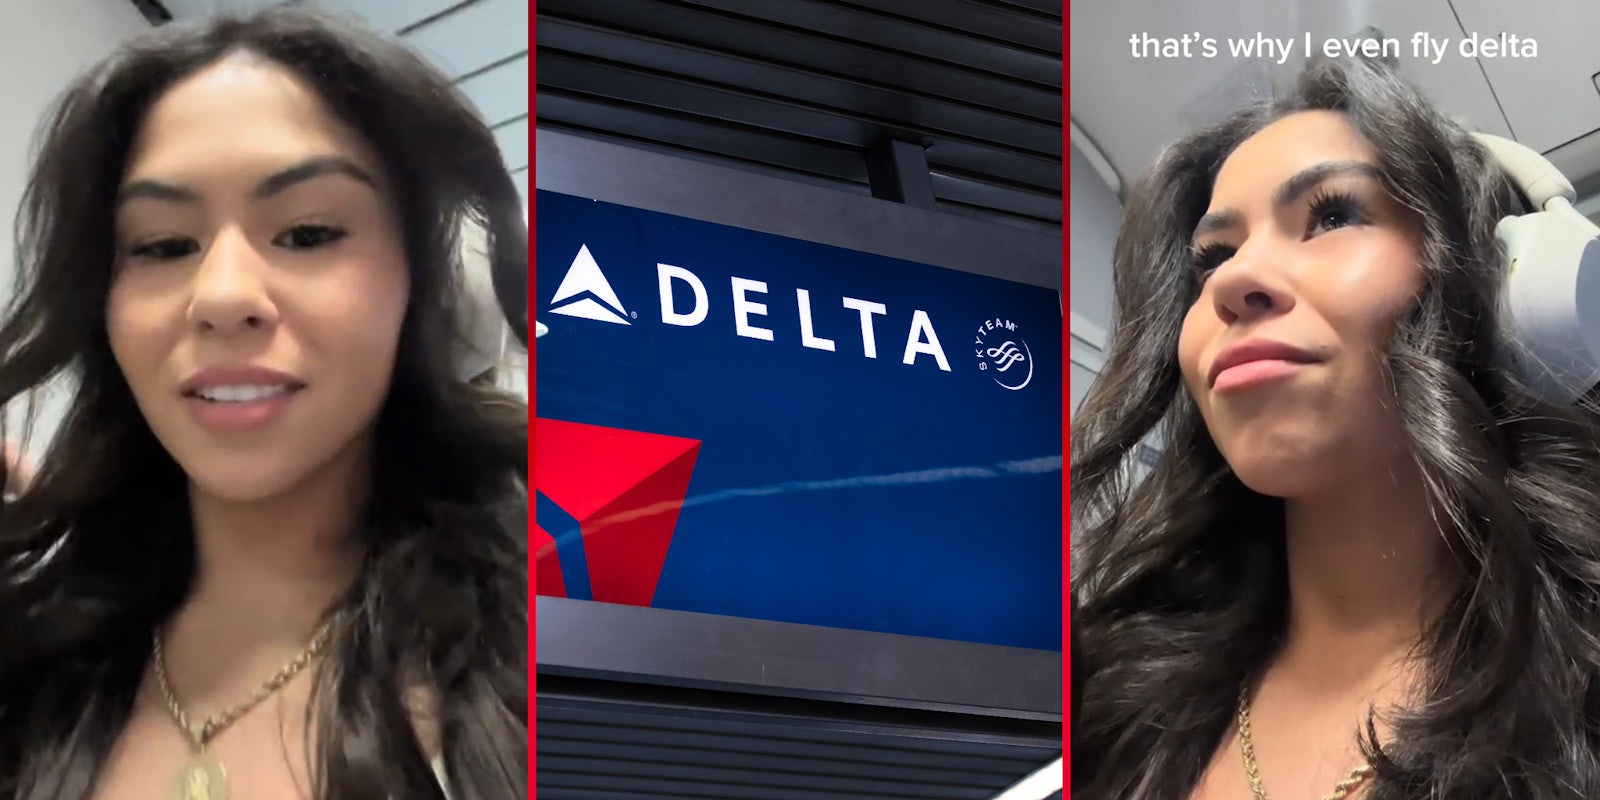 Delta passenger tries getting pilot’s secret trading card. The flight attendant’s response shocks her